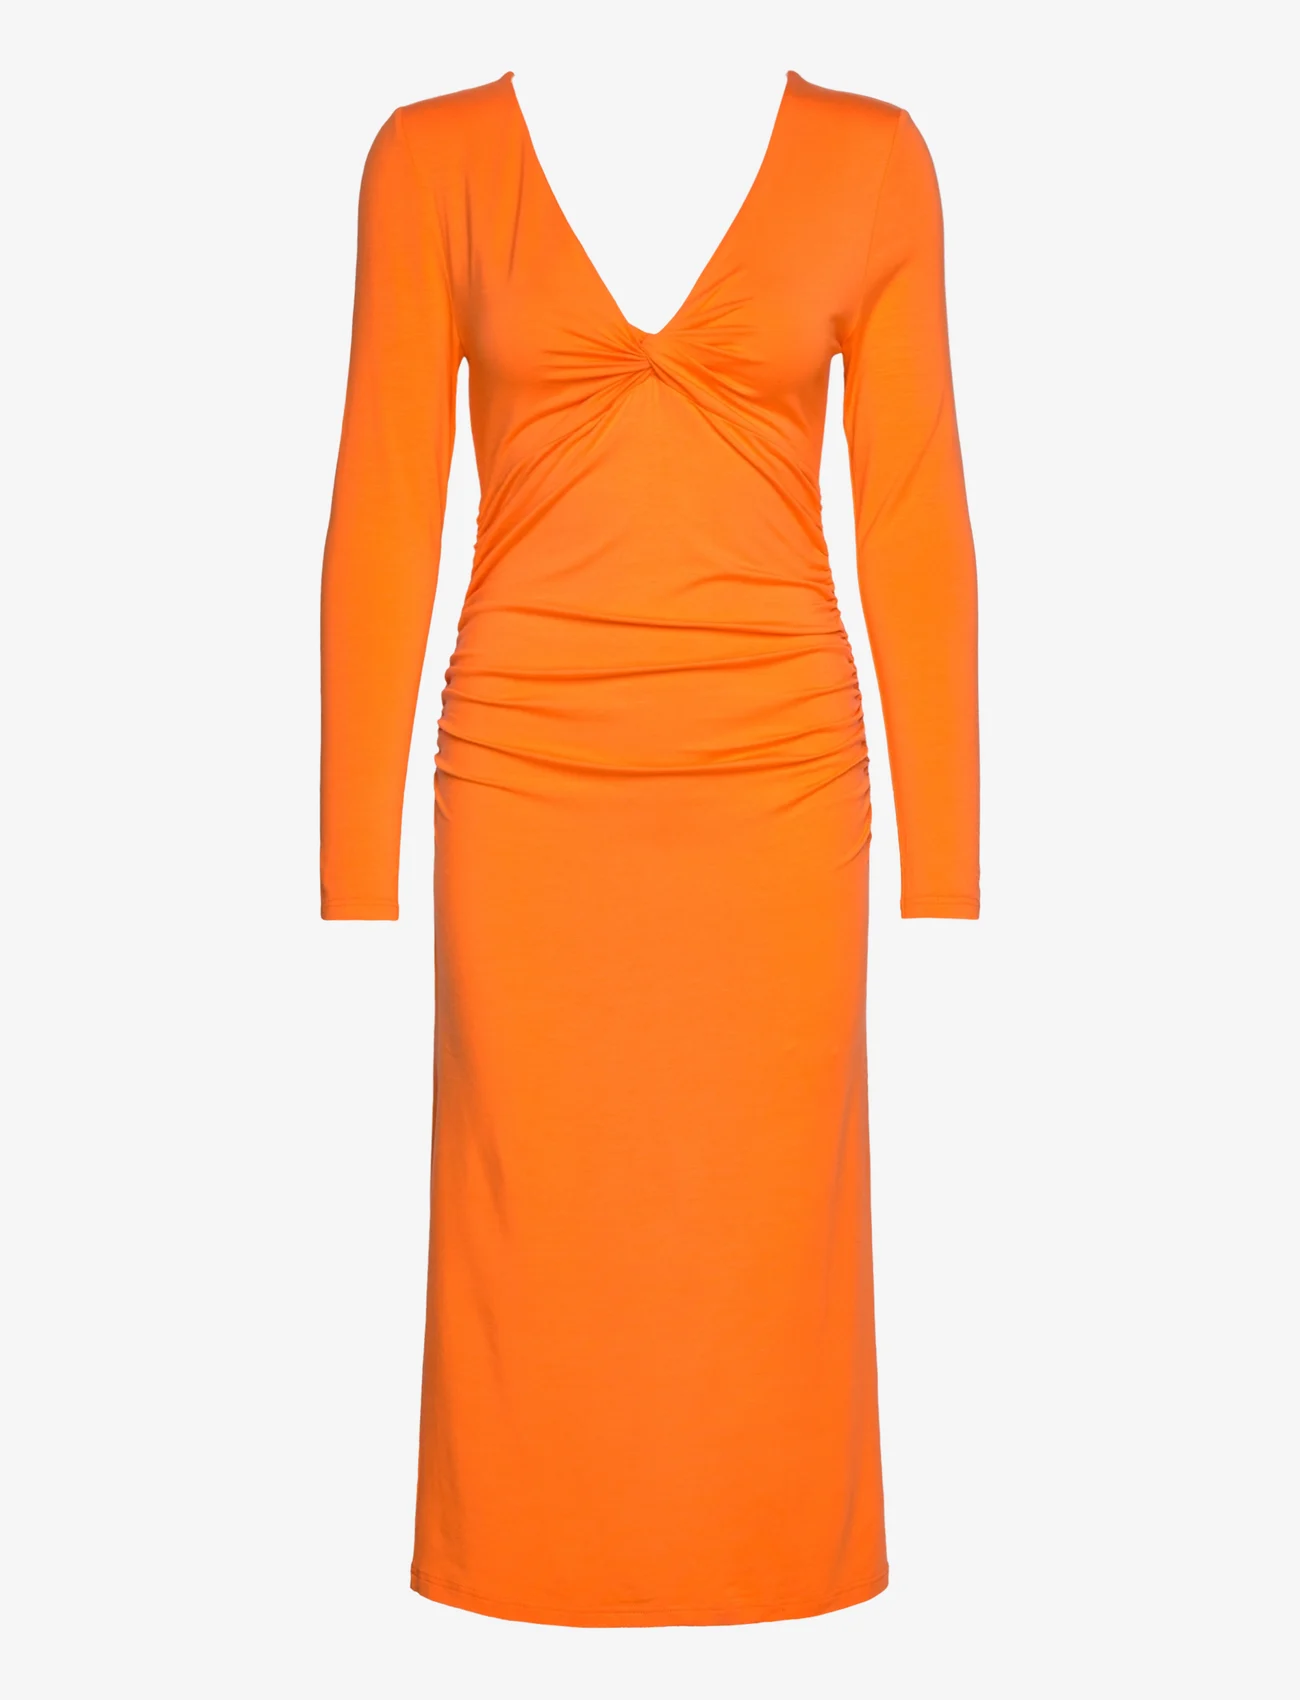 Ganni - Light Stretch Jersey - midiklänningar - vibrant orange - 0